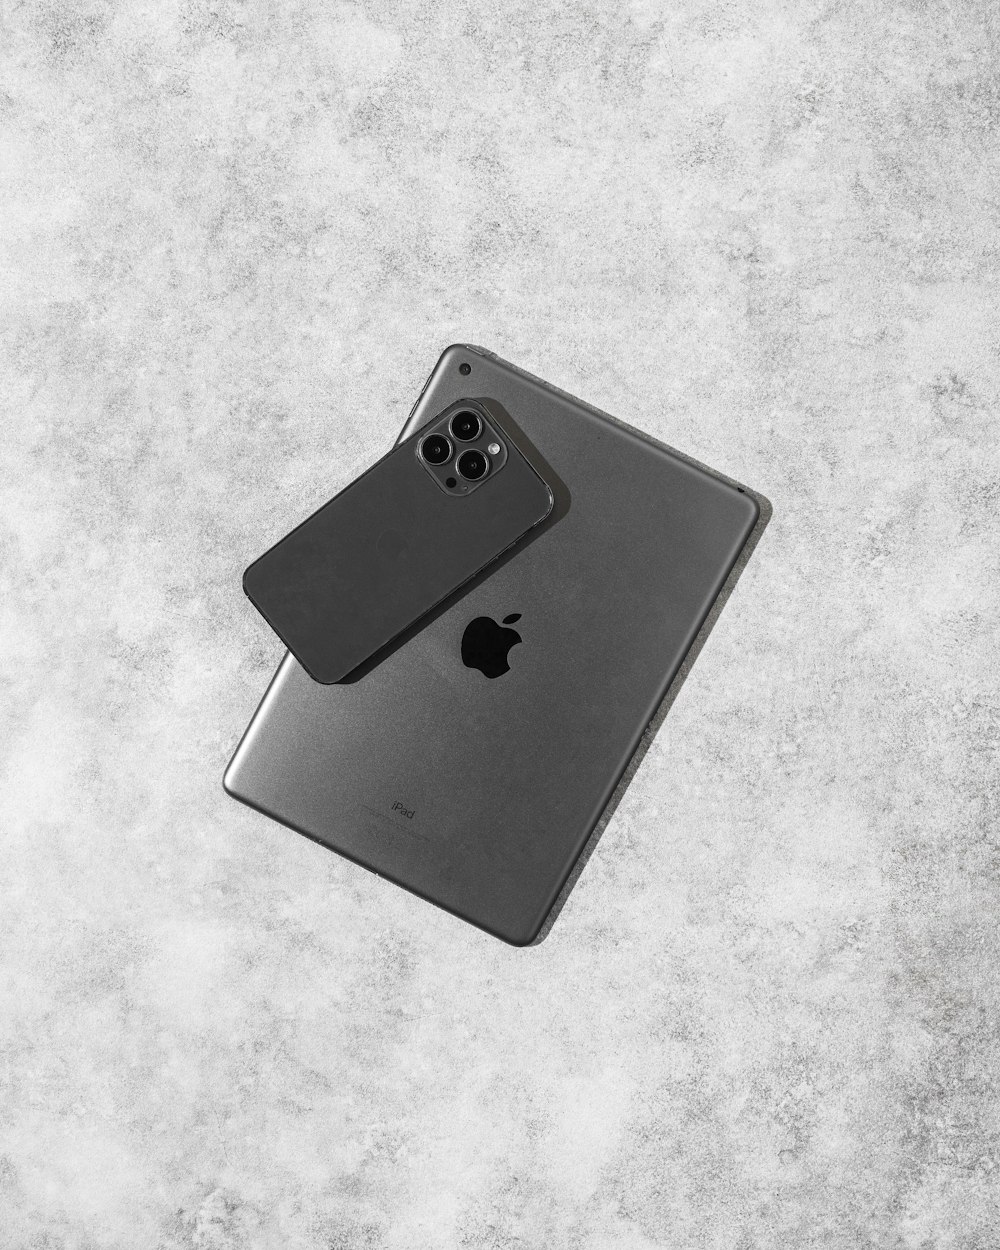 Una foto en blanco y negro de un iPhone